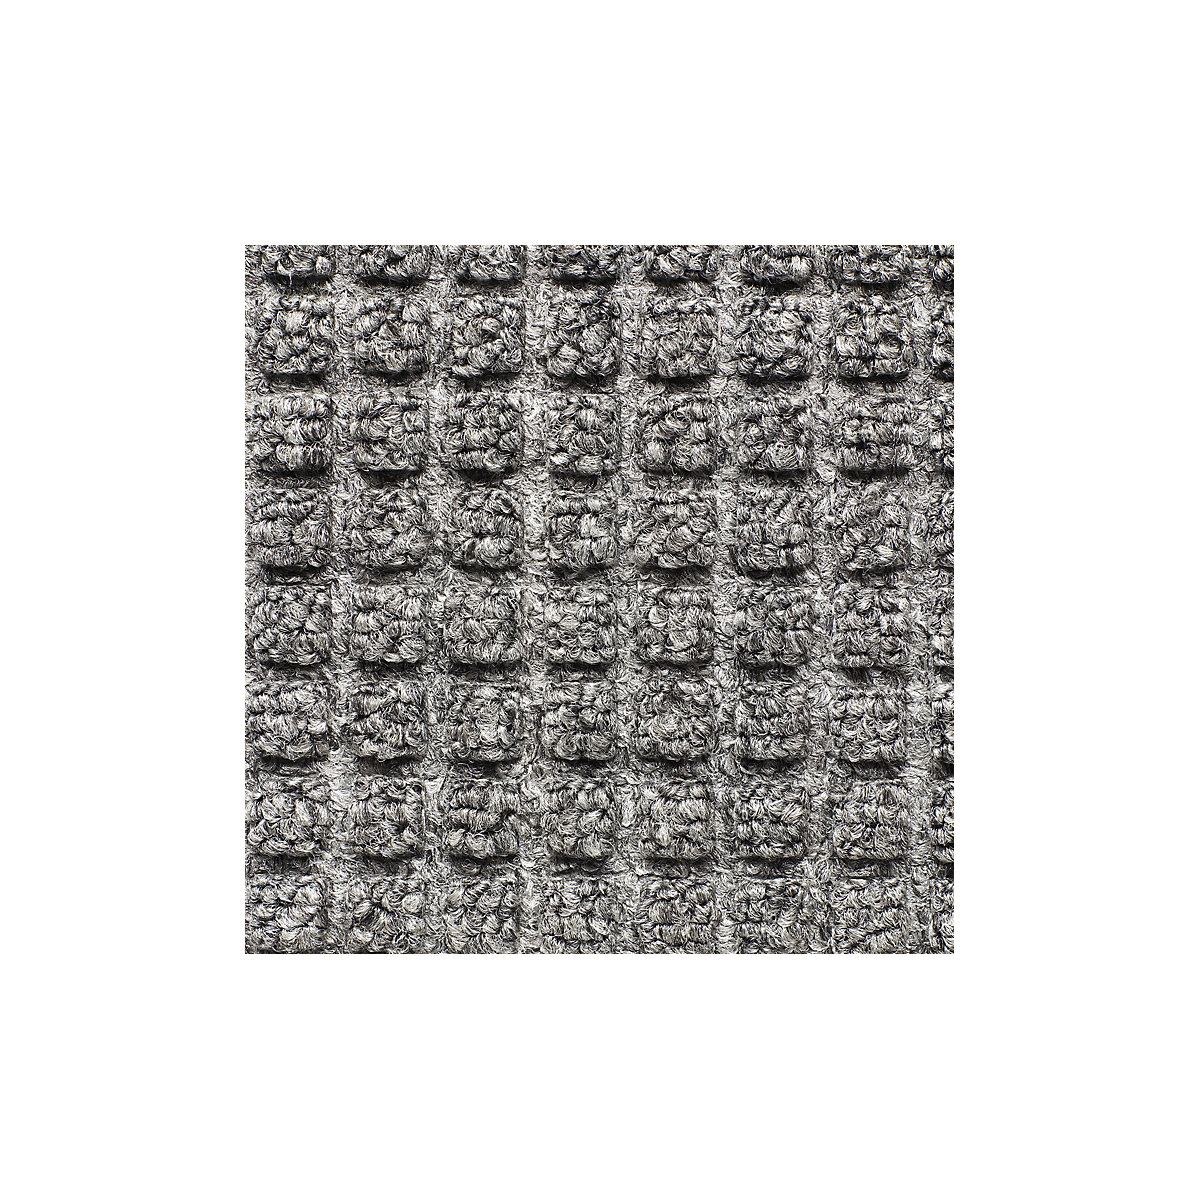 Vuilvangmat, duurzaam – NOTRAX, l x b = 1500 x 900 mm, grijs-3